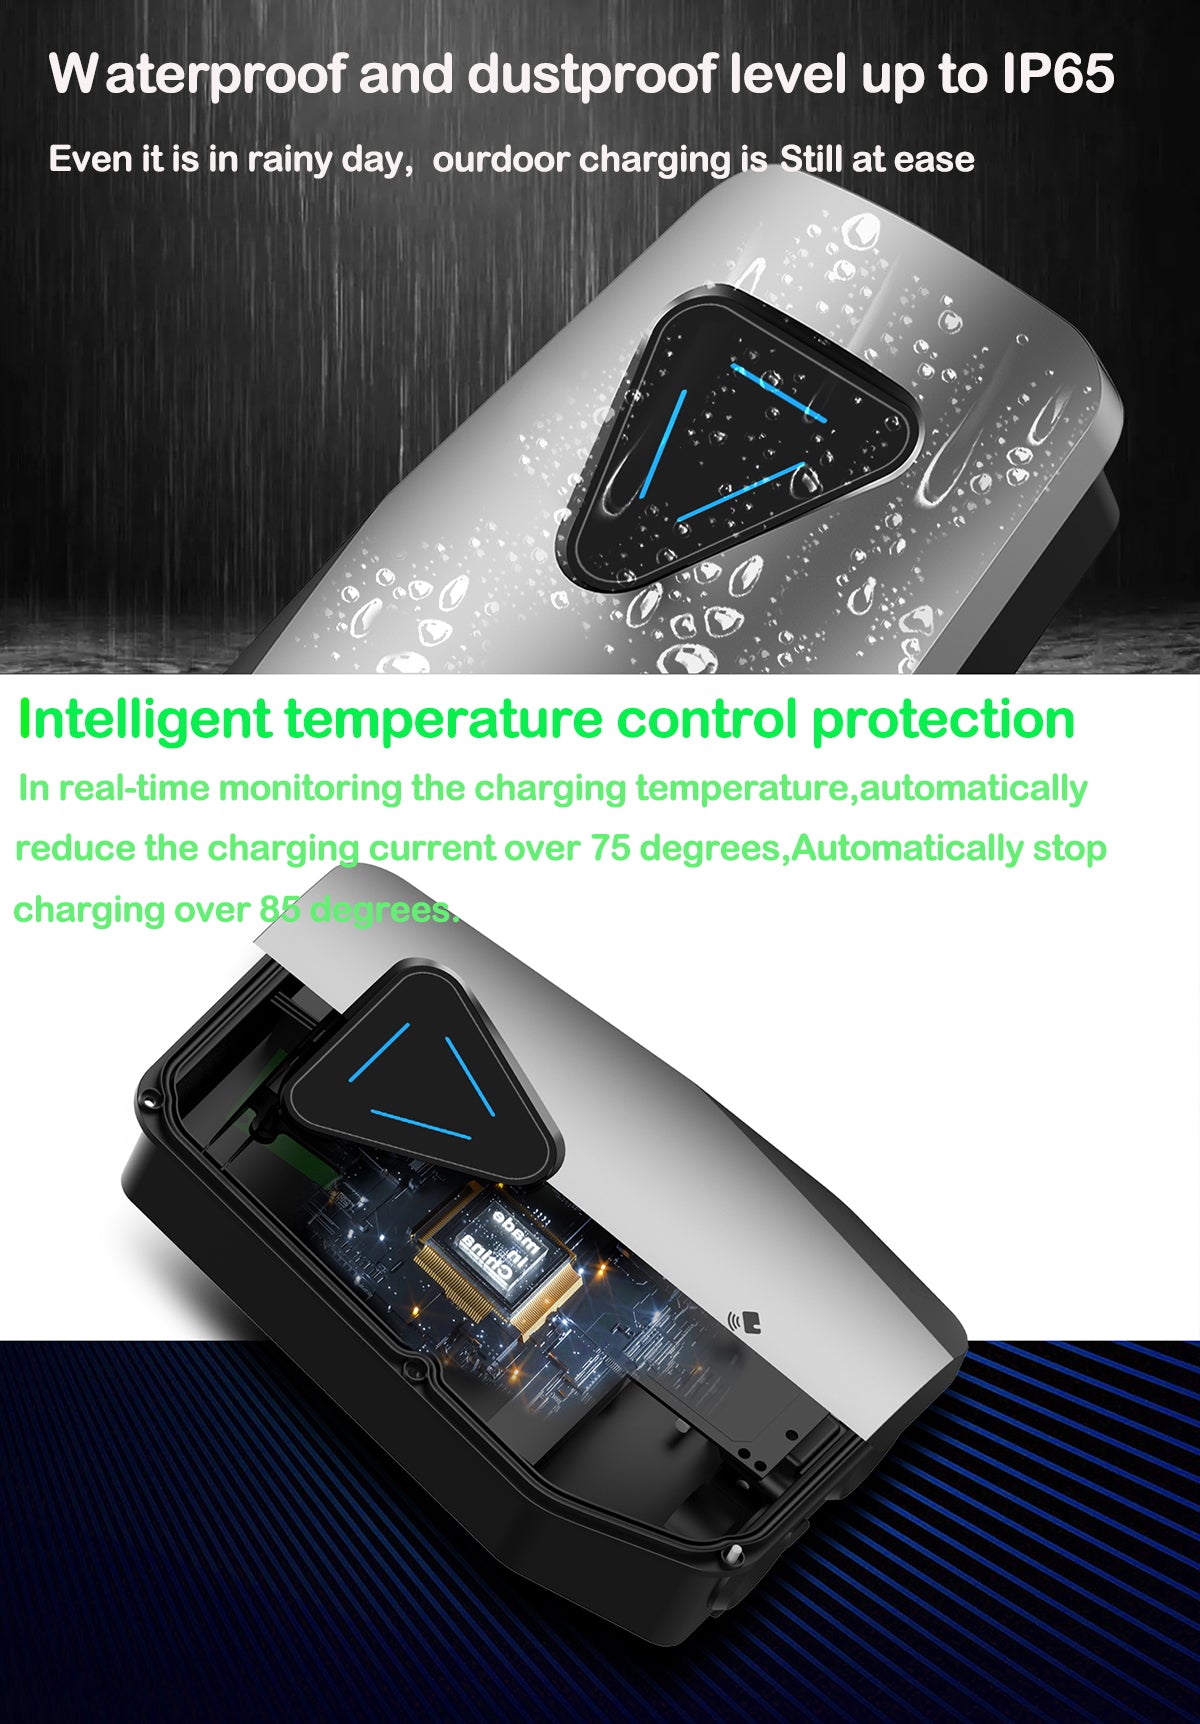 Noeifevo 22KW 32A 3 phase EV Wallbox, type 2 chargeur de courant fort –  Smart LifePO4 Batterie & Heimspeicherung von Energie & Intelligentes  Ladegerät